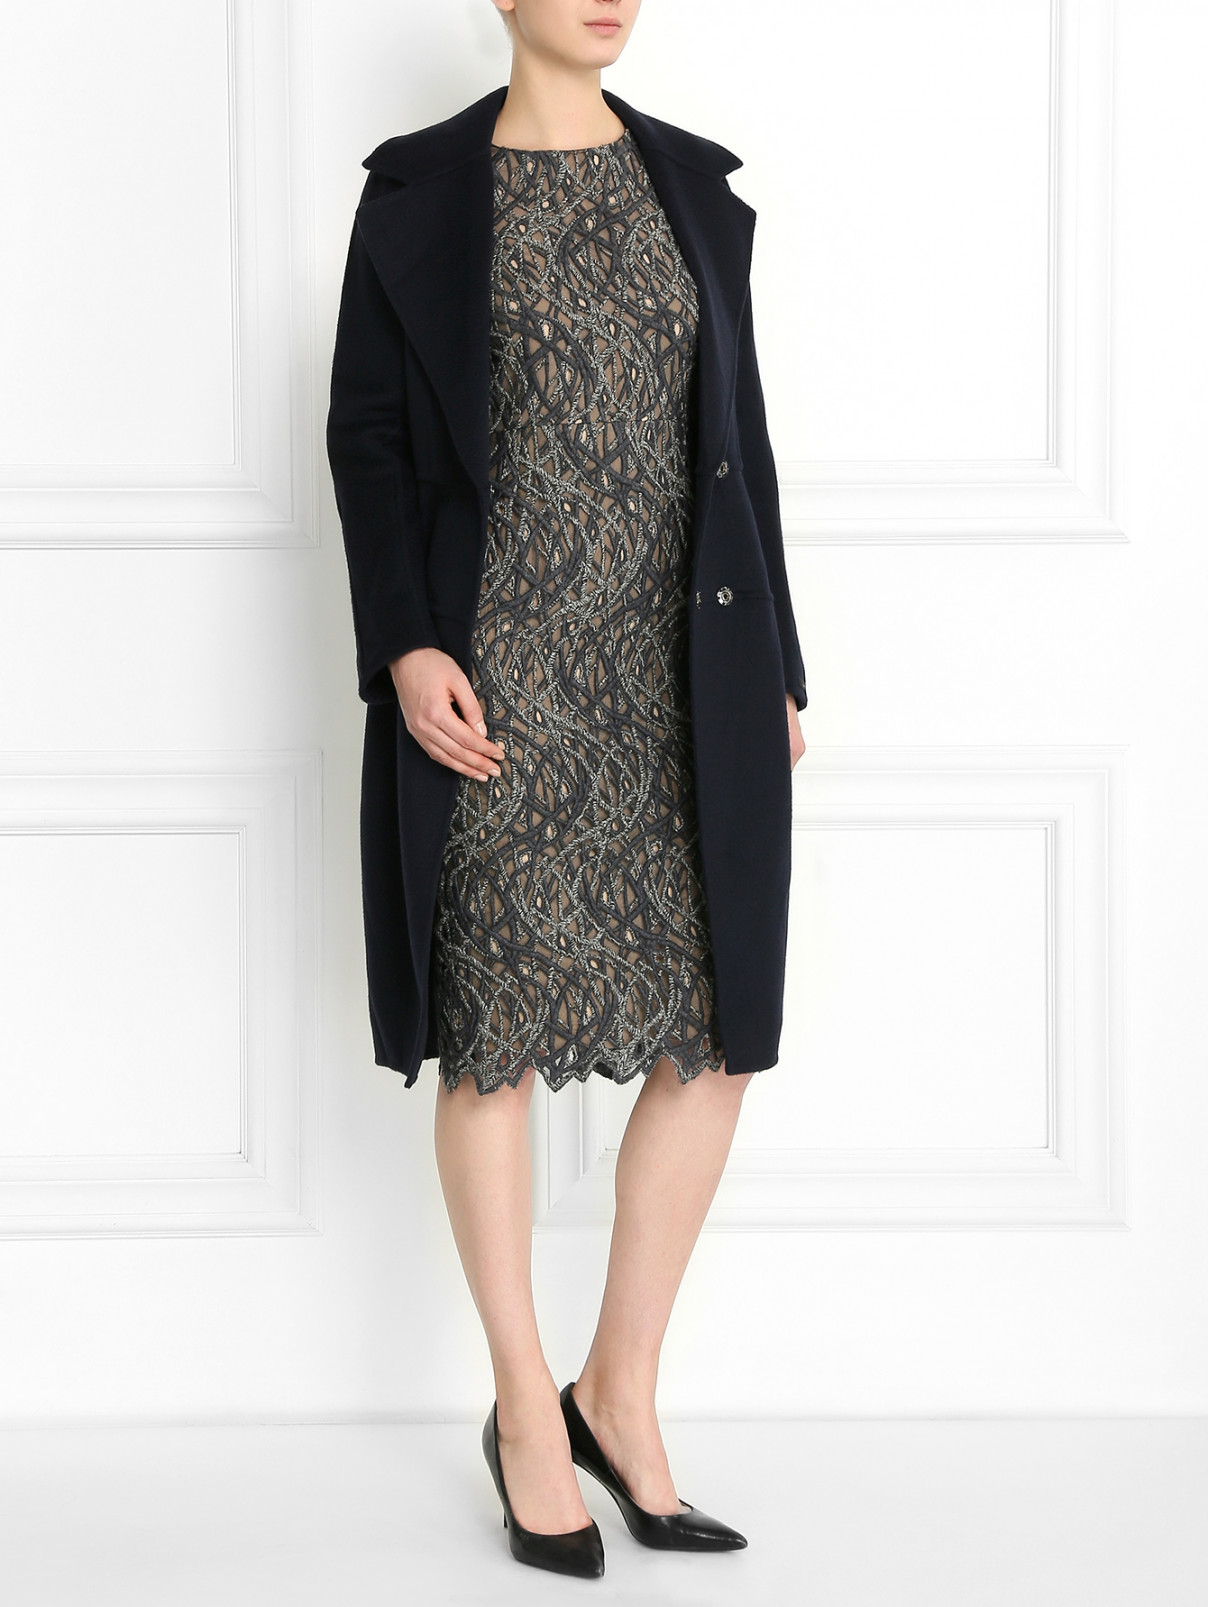 Платье-футляр с вышивкой Aquilano Rimondi  –  Модель Общий вид  – Цвет:  Серый